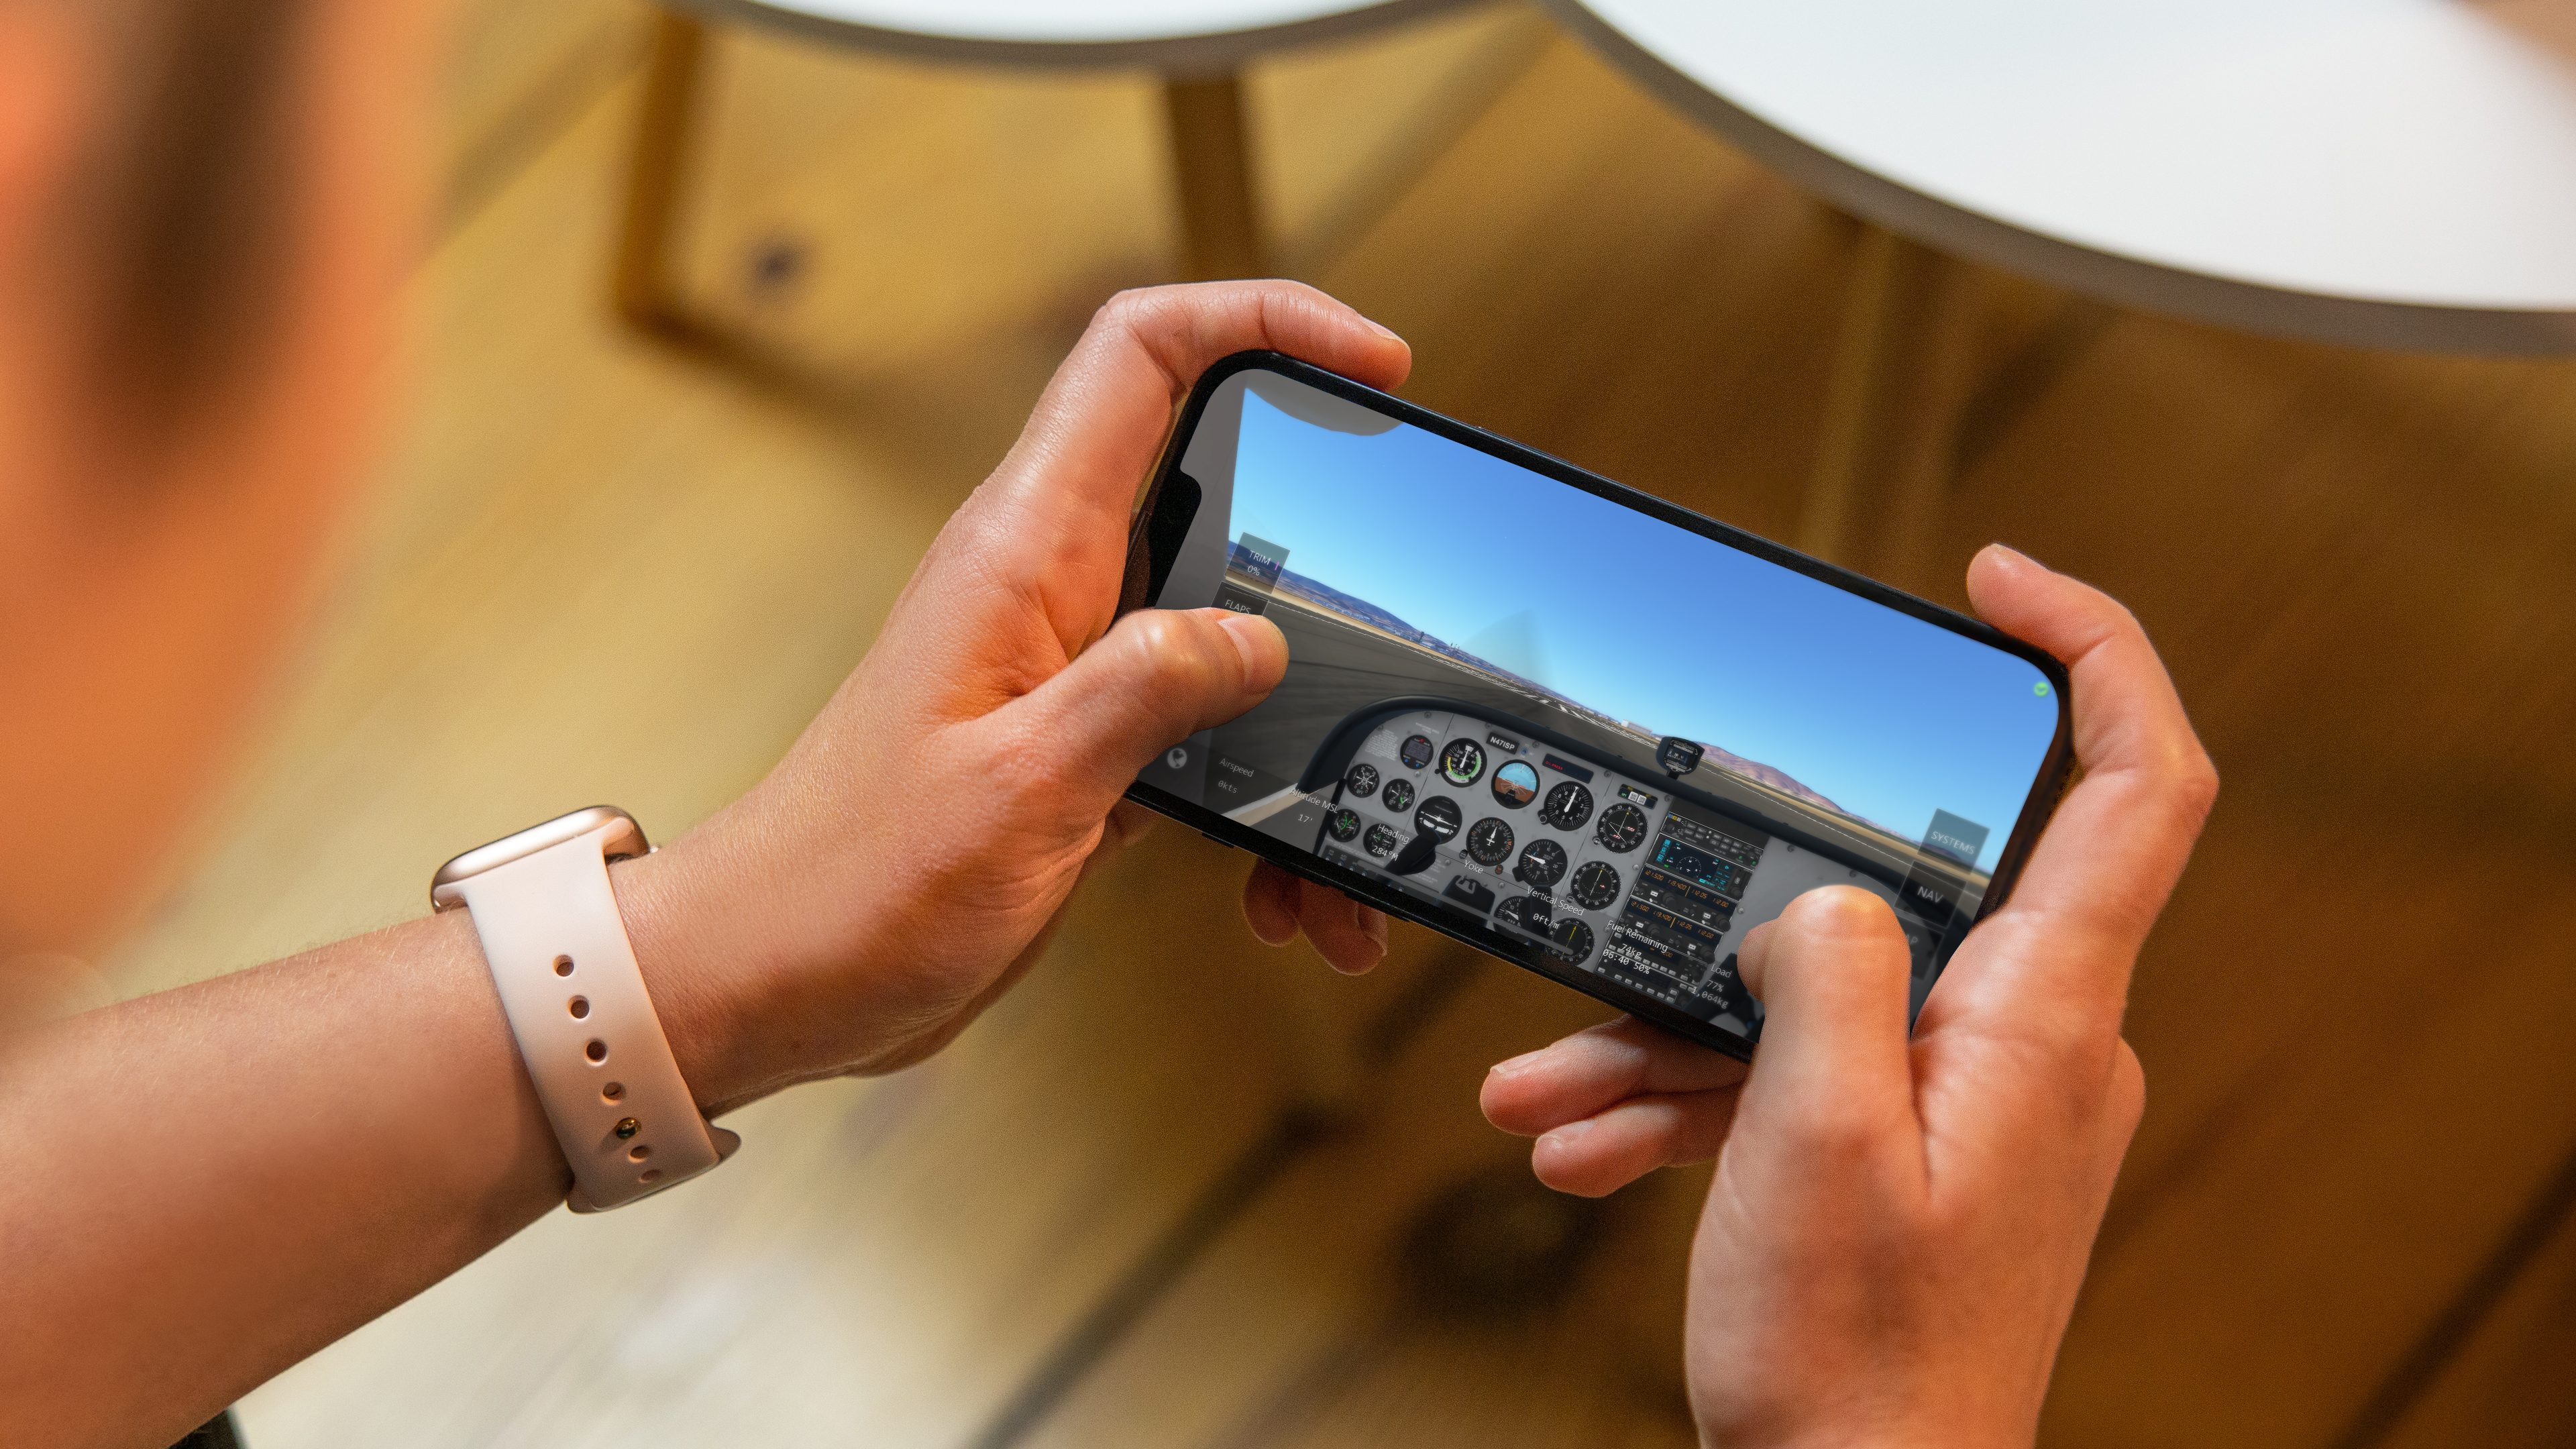 Easy Flight - Flight Simulator - Apps on Google Play